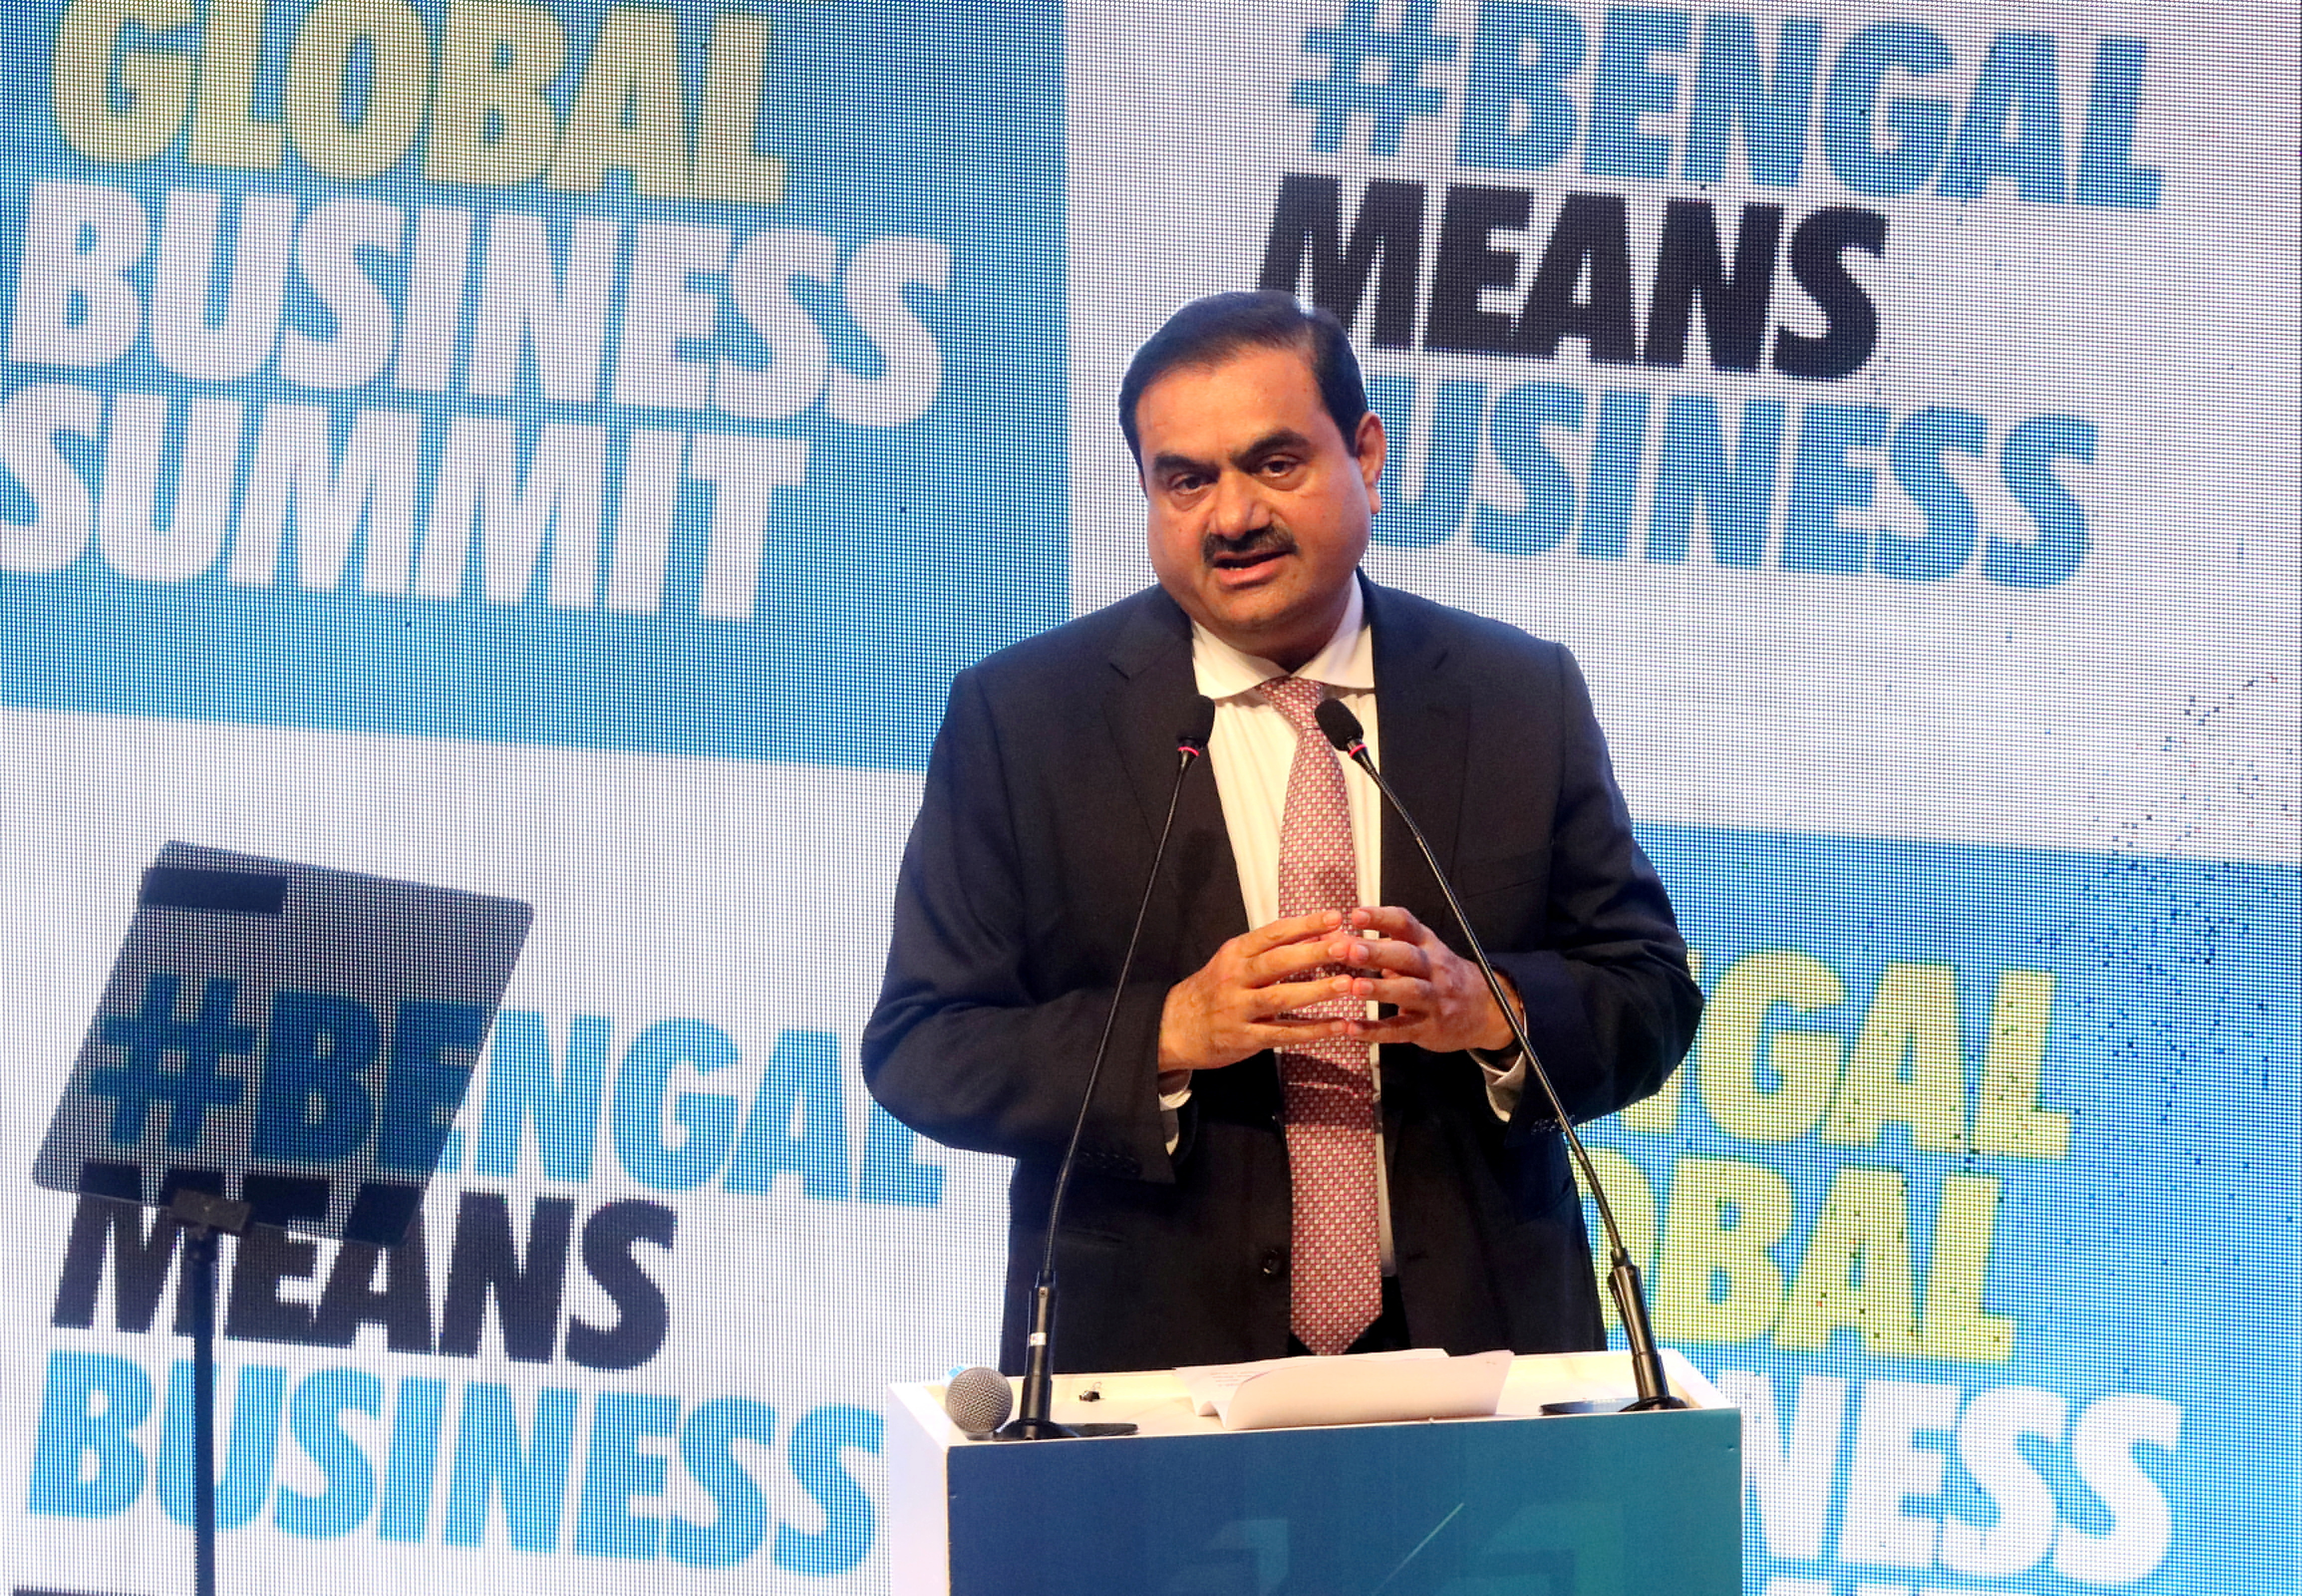 De Indiase miljardair Gautam Adani spreekt afgevaardigden toe tijdens de Bengal Global Business Summit in Kolkata